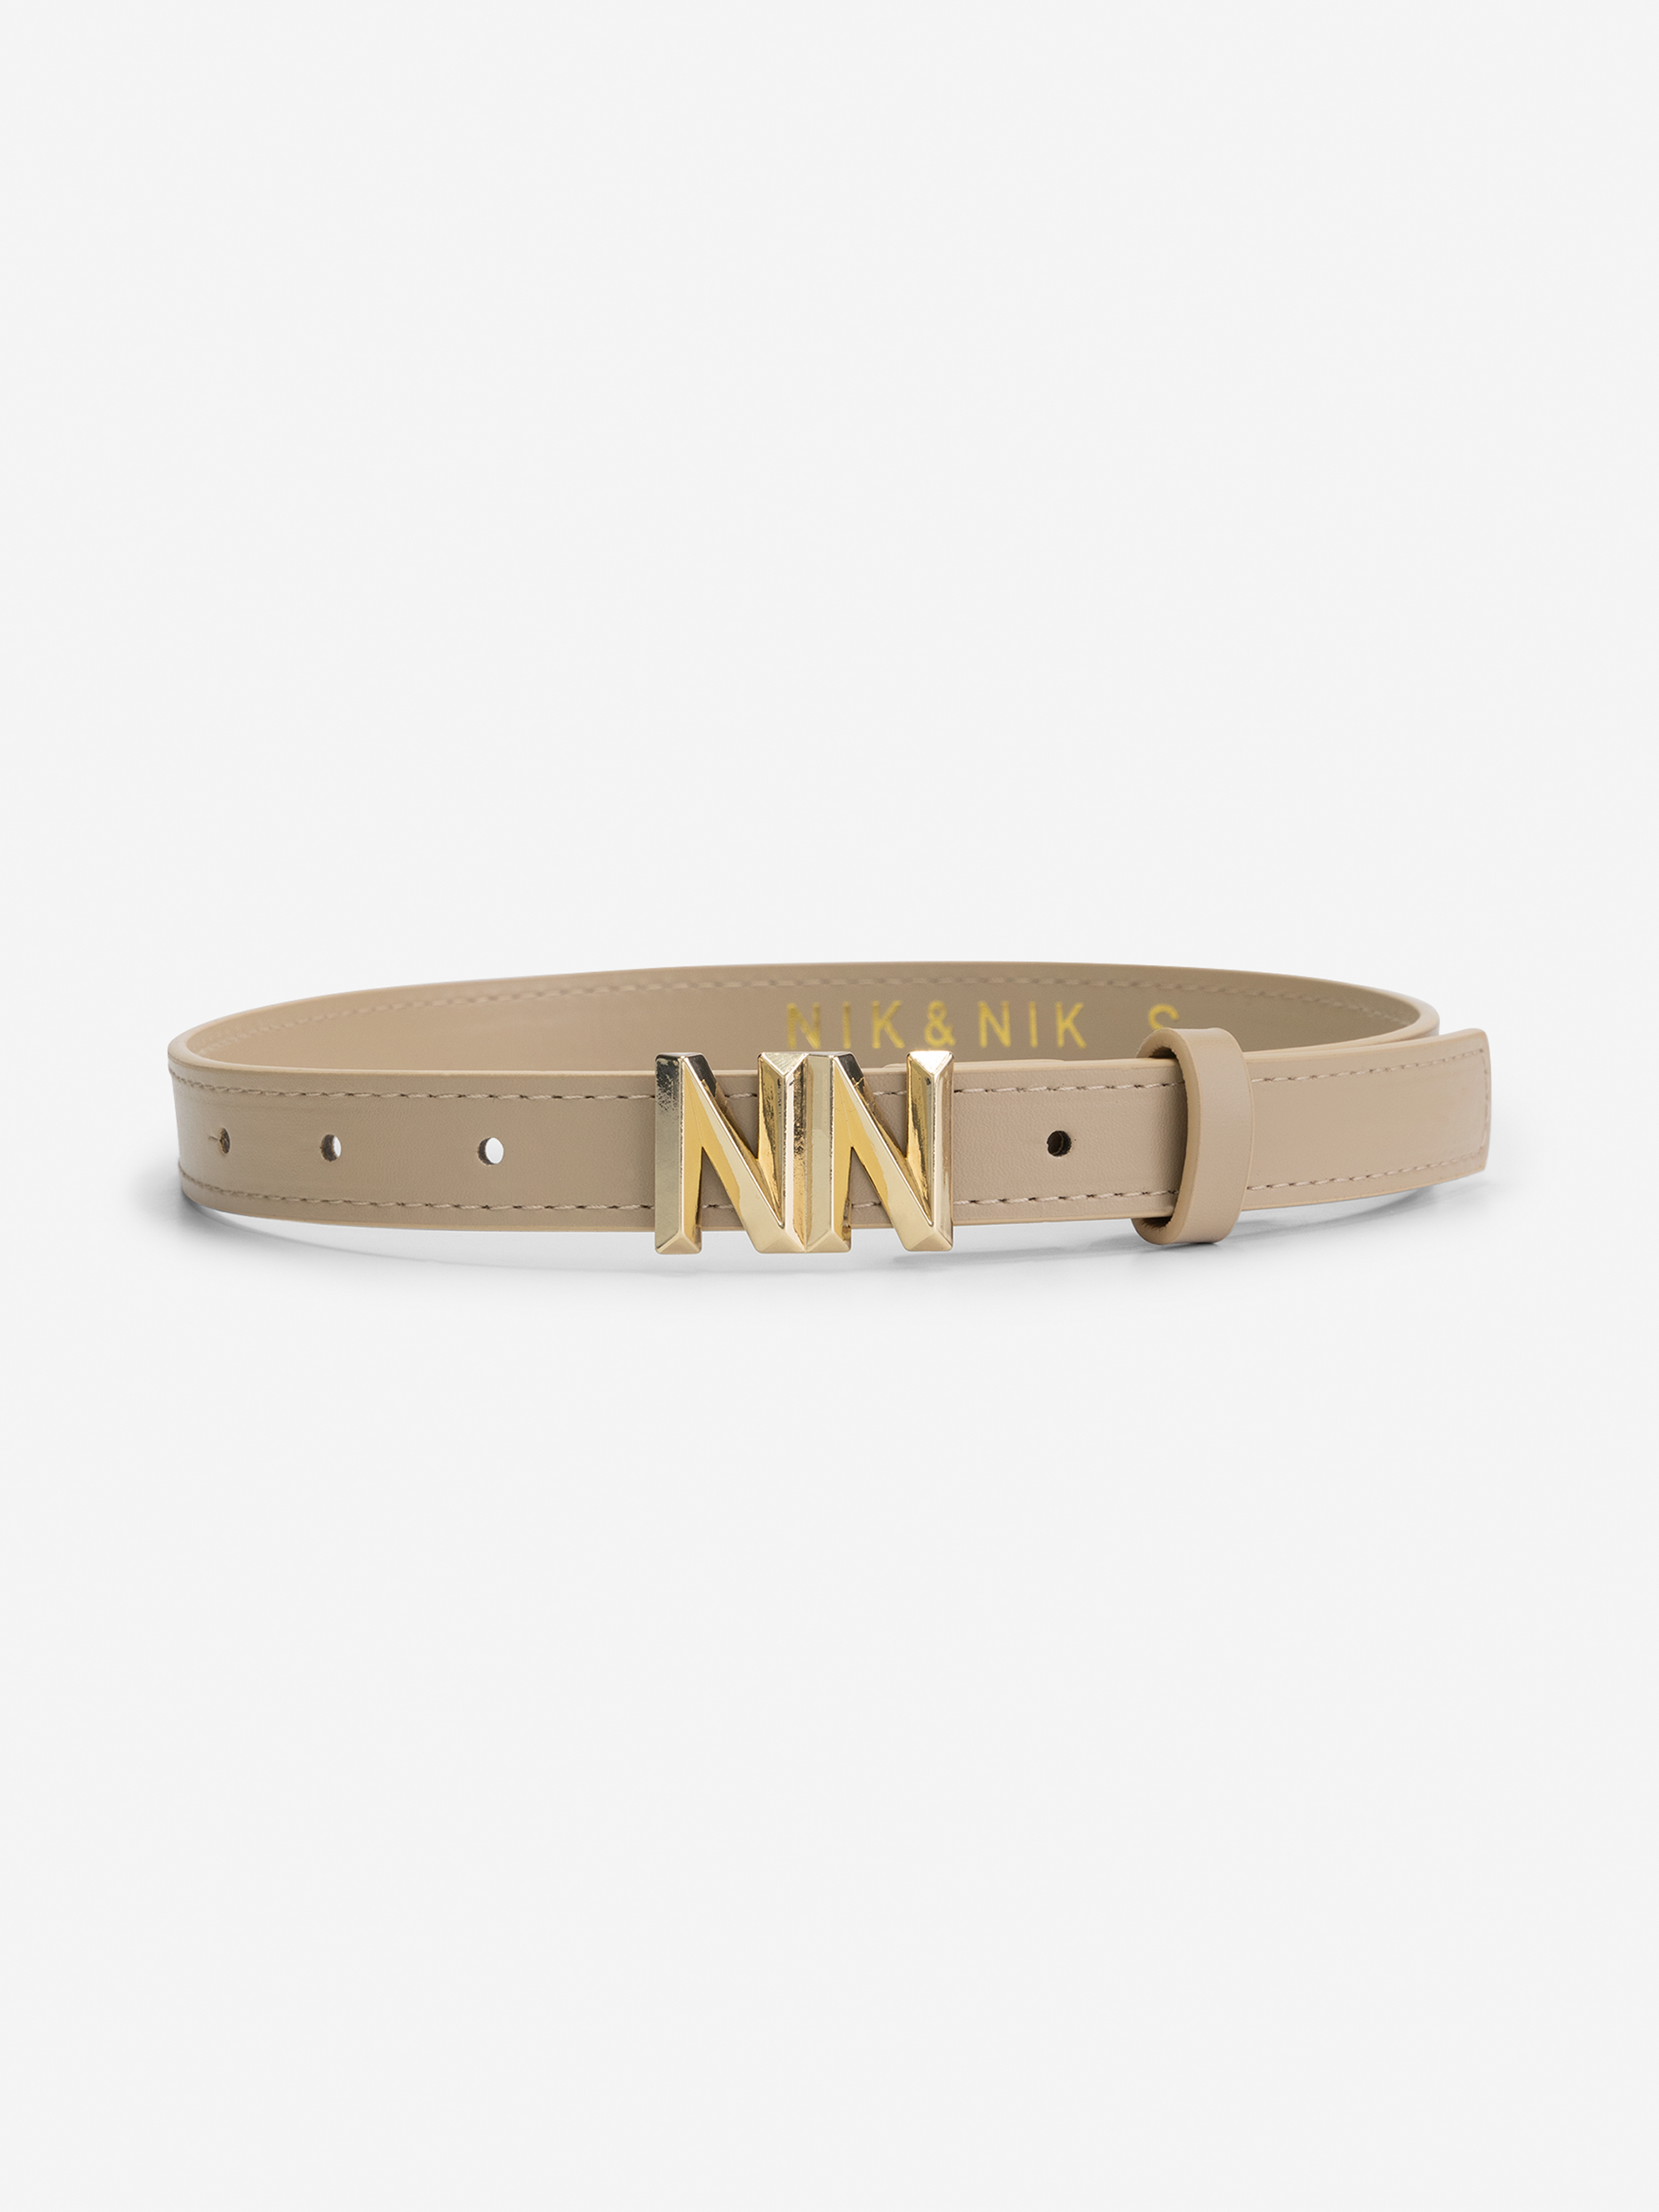 NN Waist belt